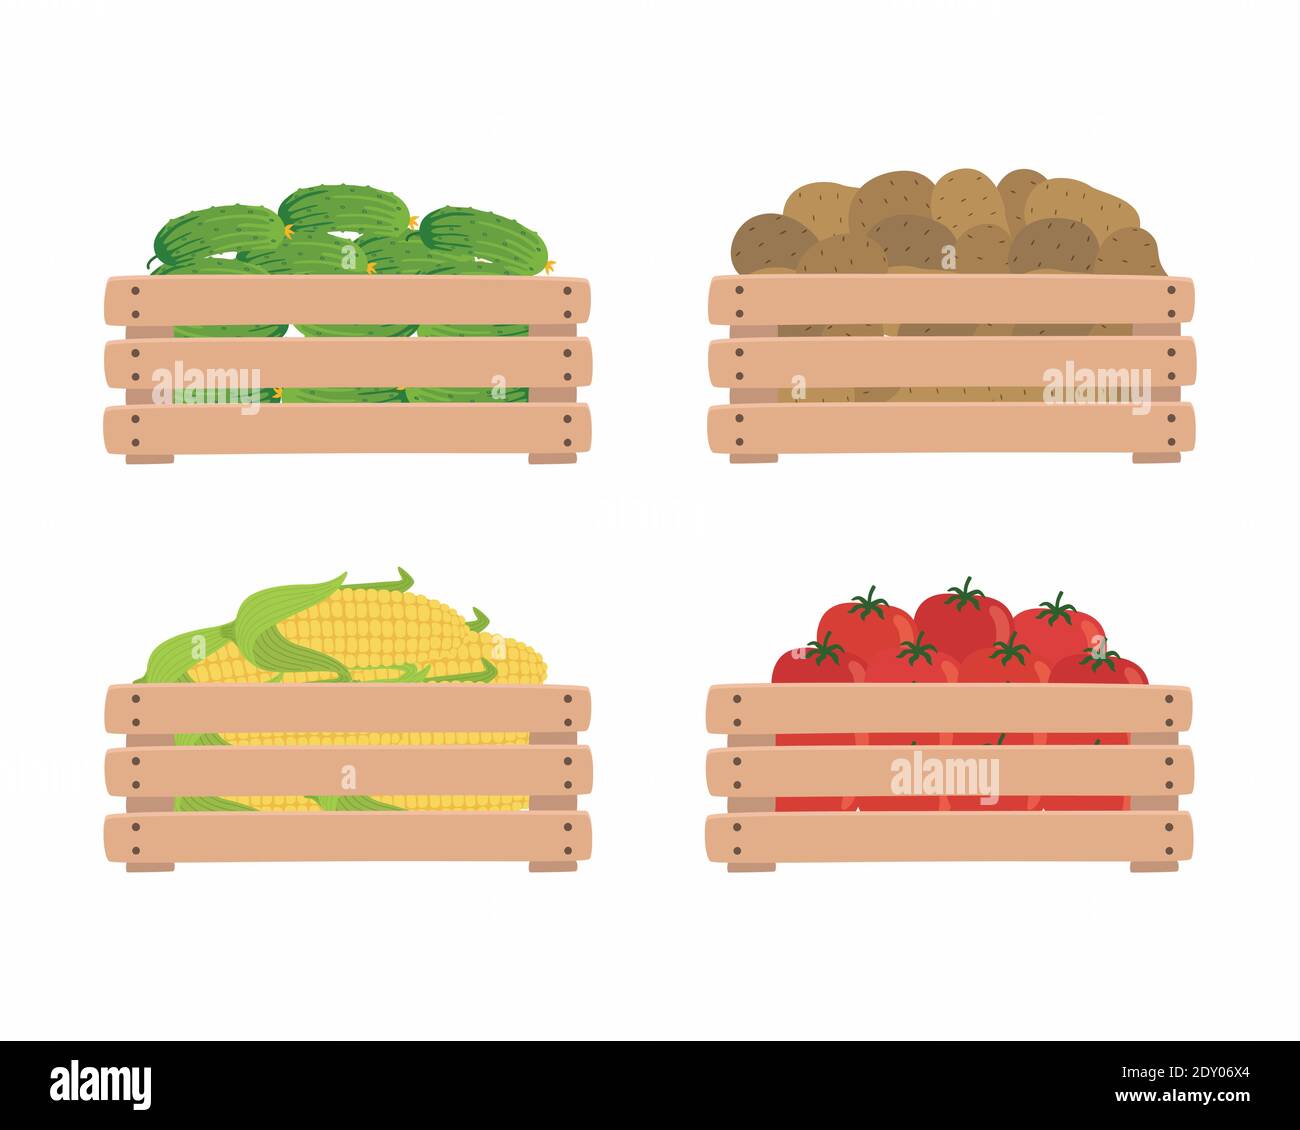 Gemüse in Holzkisten, isoliert auf weißem Hintergrund. Tomaten, Kartoffeln, Mais und Gurken. Illustration von Bio-Lebensmitteln. Stock Vektor